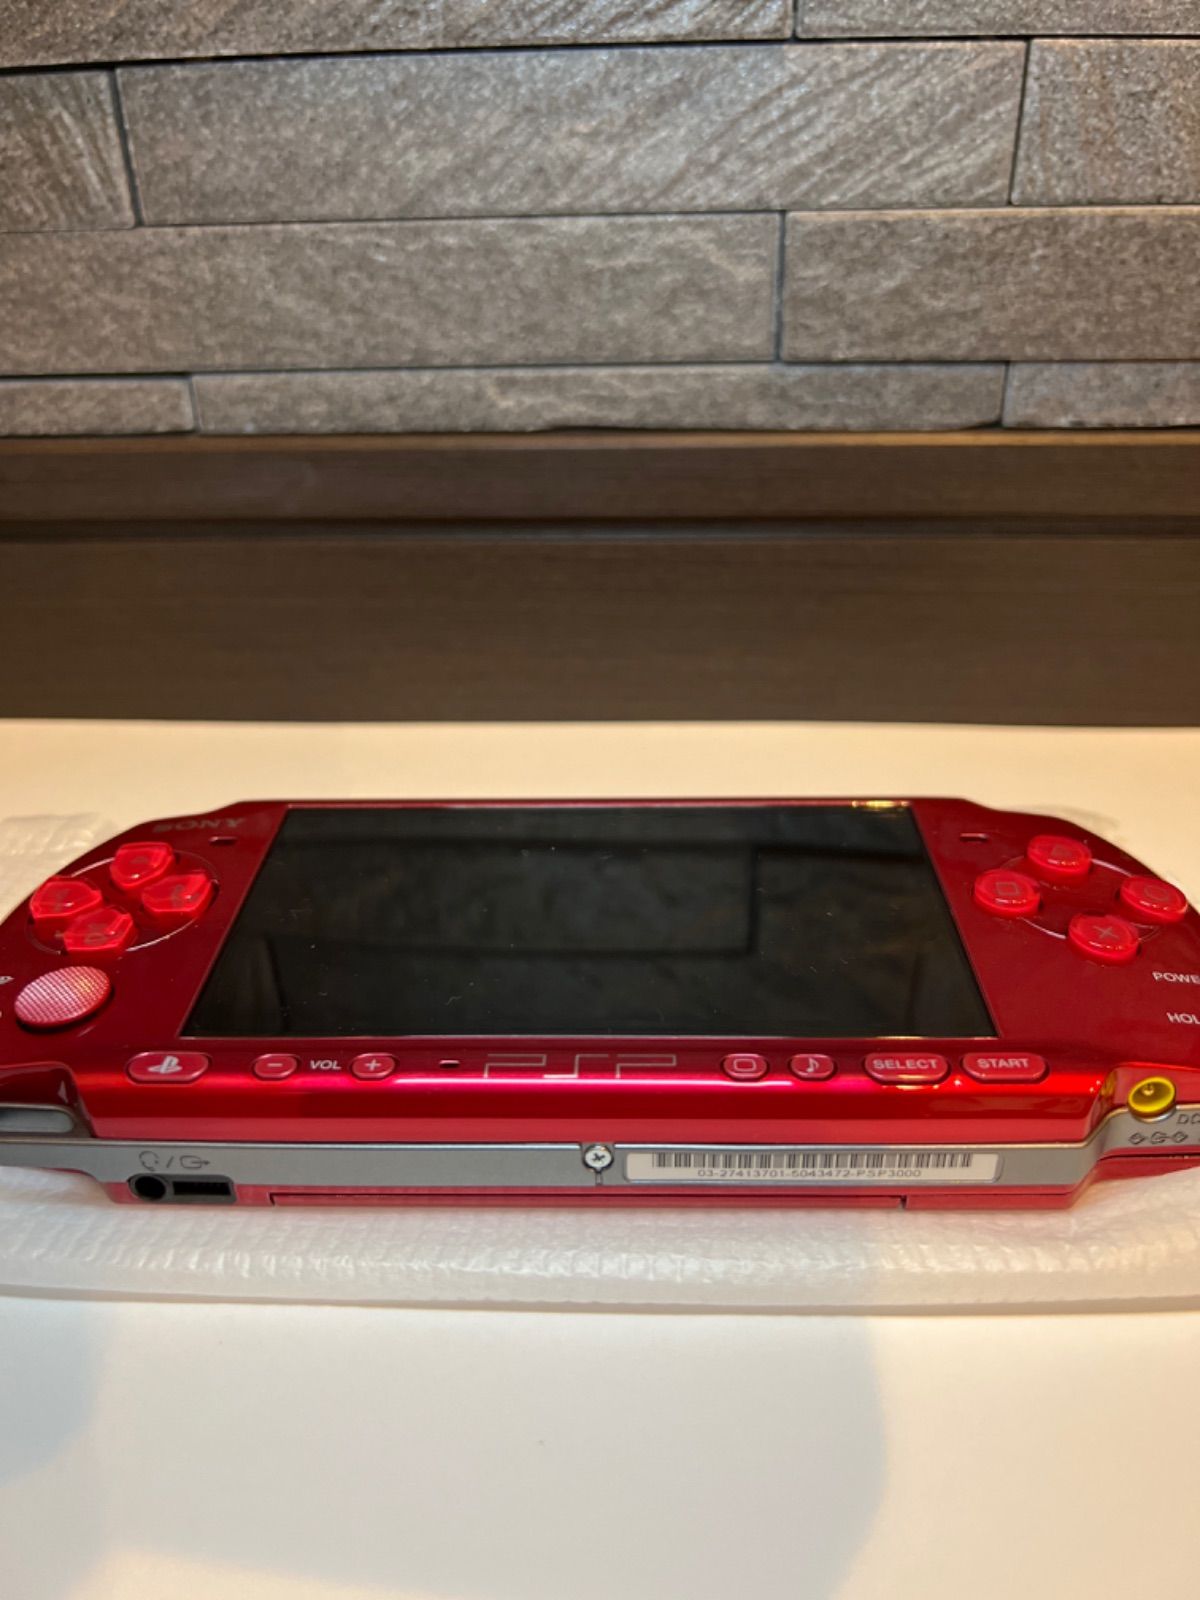 ジャンク扱い PSP PSP-3000 RR - よろずや＠メルカリショップス - メルカリ